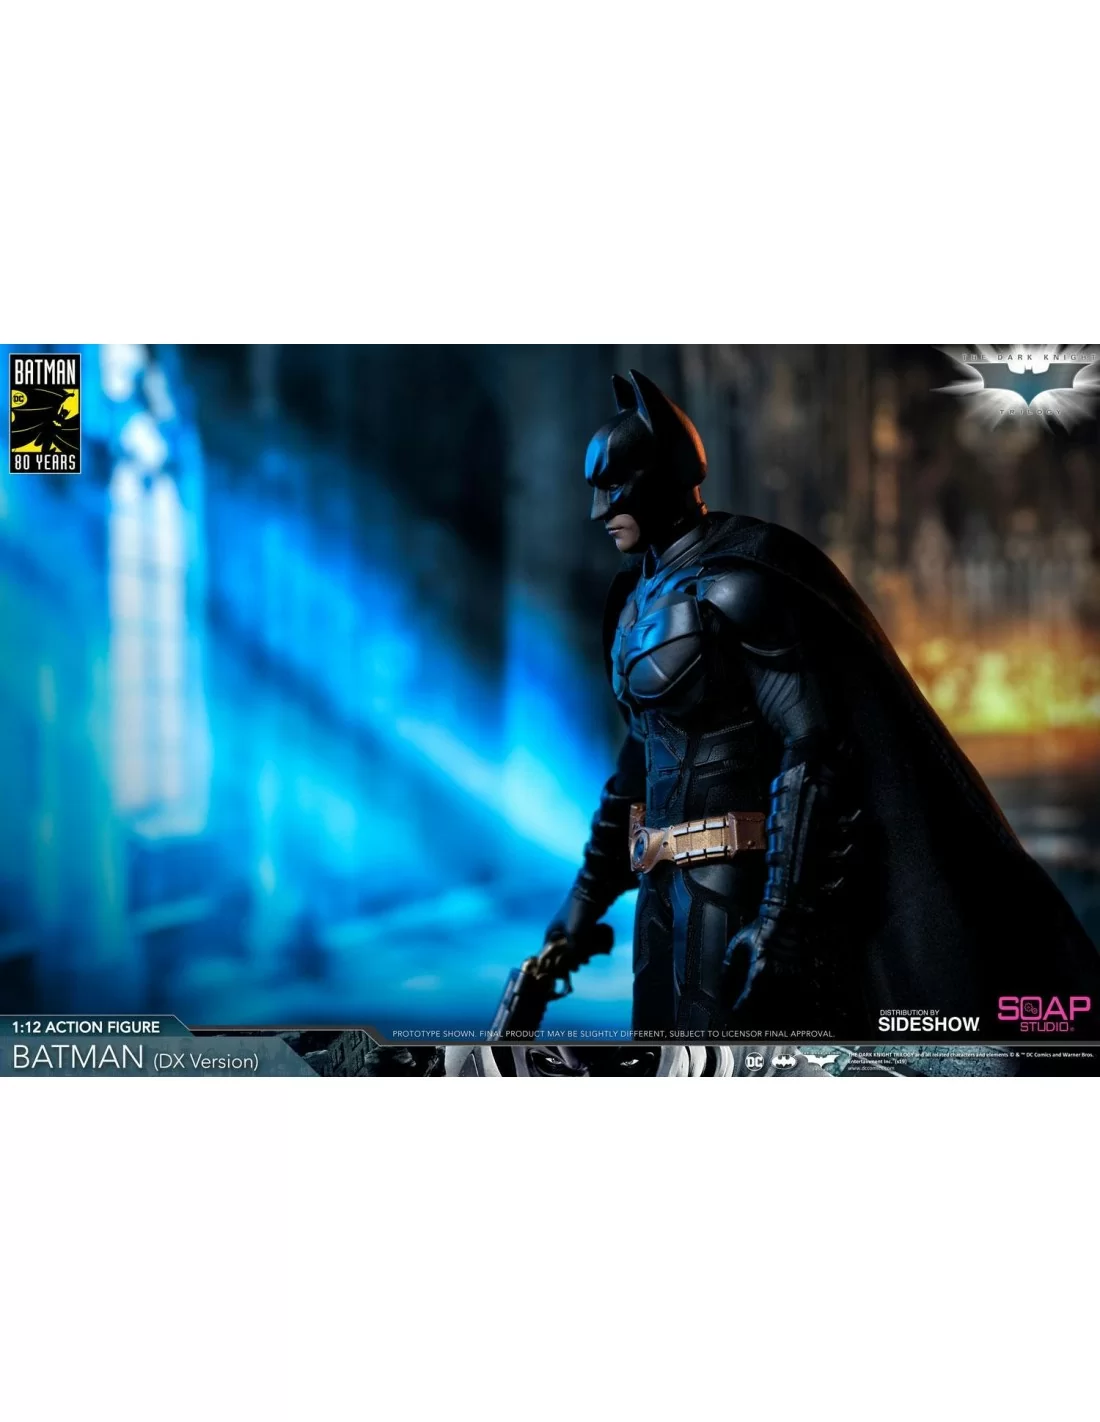 Batman (DX Edition) 1:12 Action Figure by Soap Studio